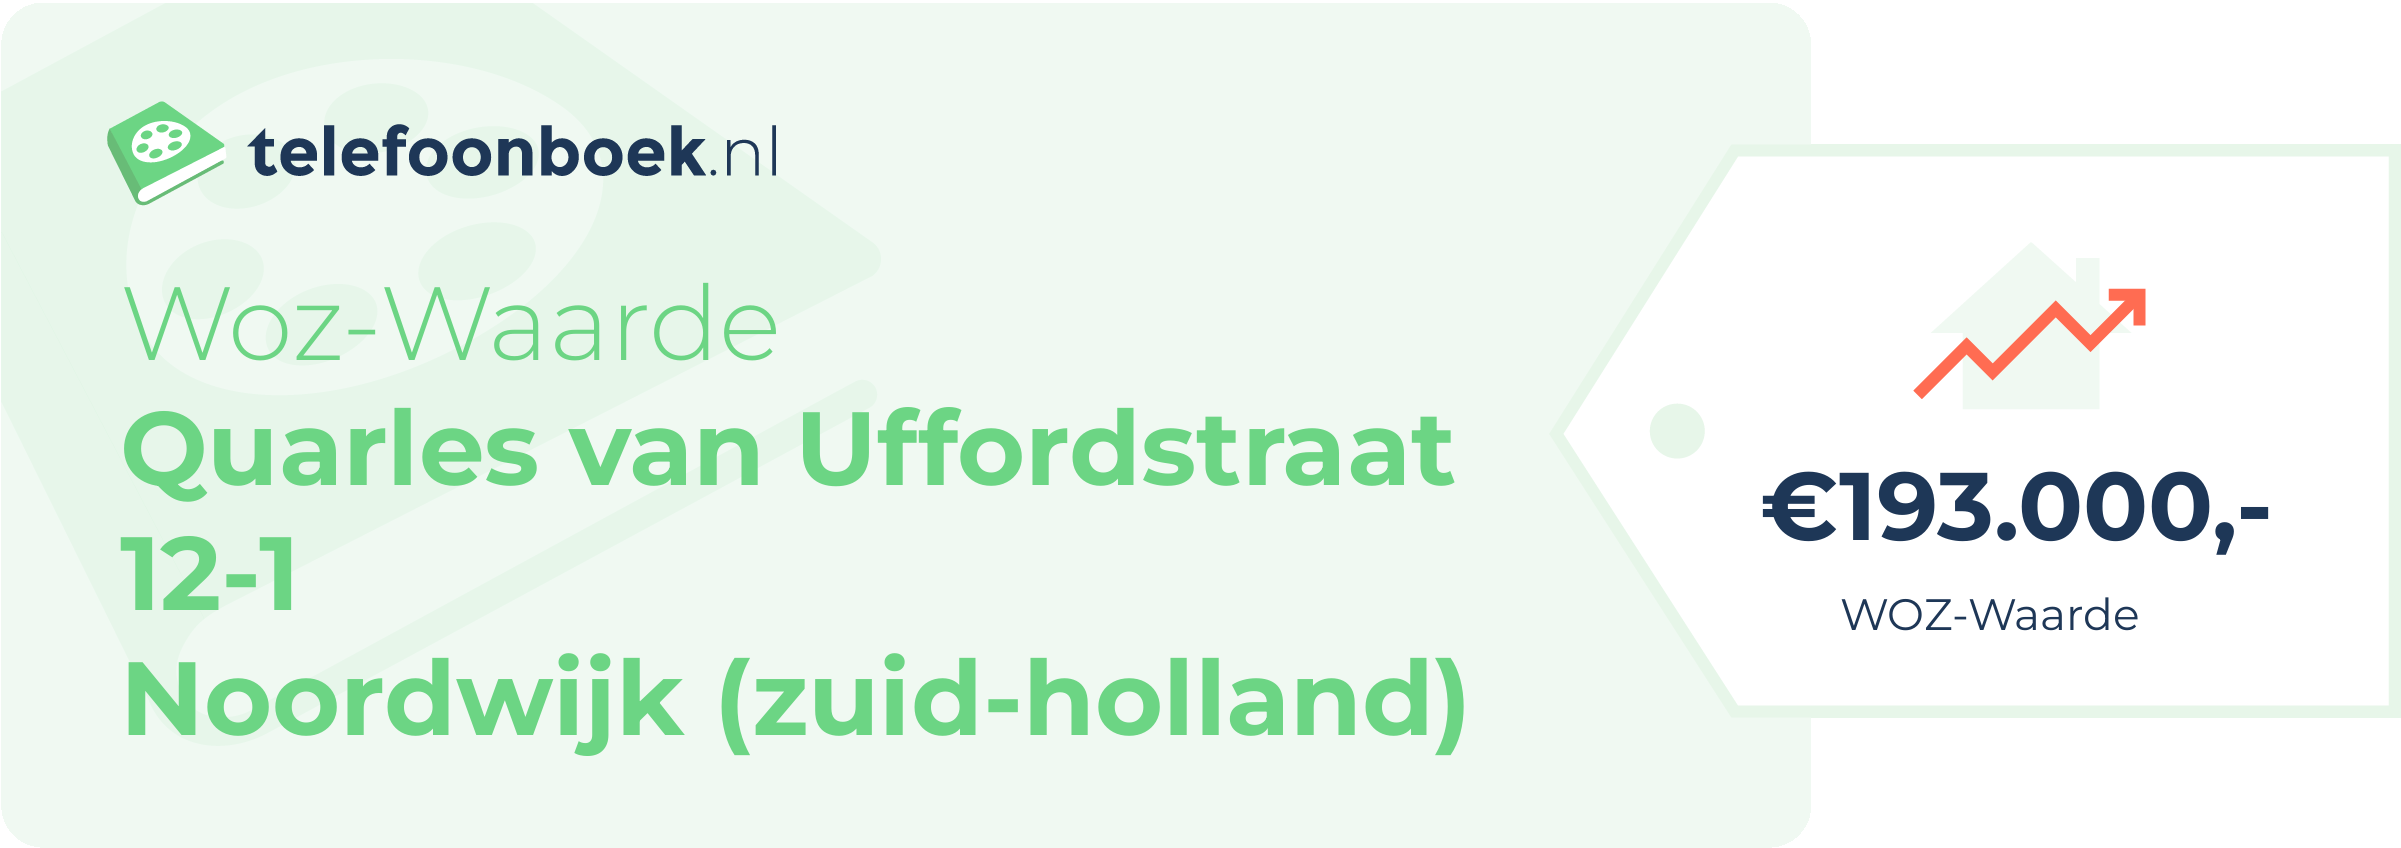 WOZ-waarde Quarles Van Uffordstraat 12-1 Noordwijk (Zuid-Holland)